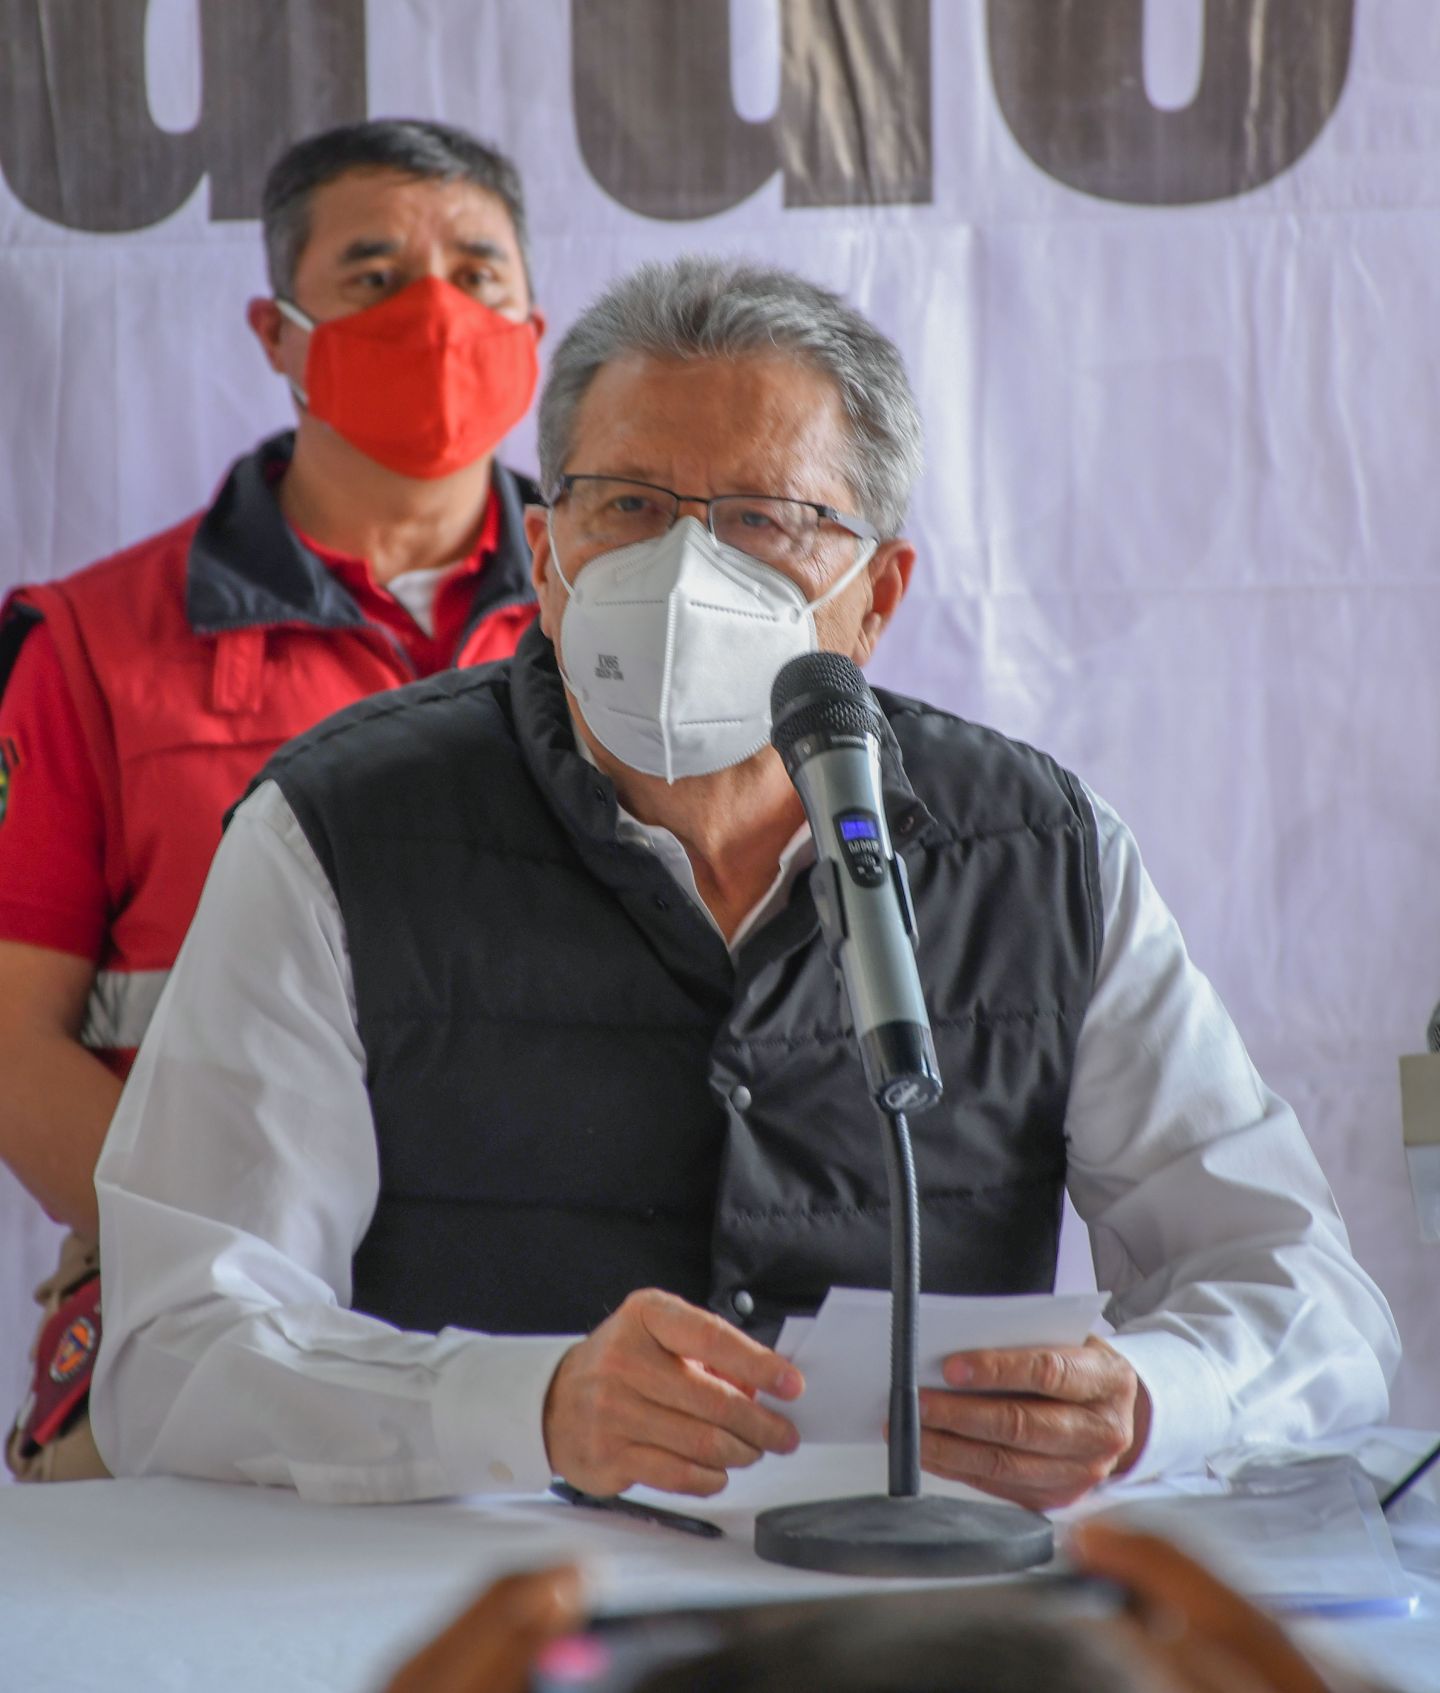 Chimalhuacán gestiona programa de vacunación COVID-19 para adultos mayores